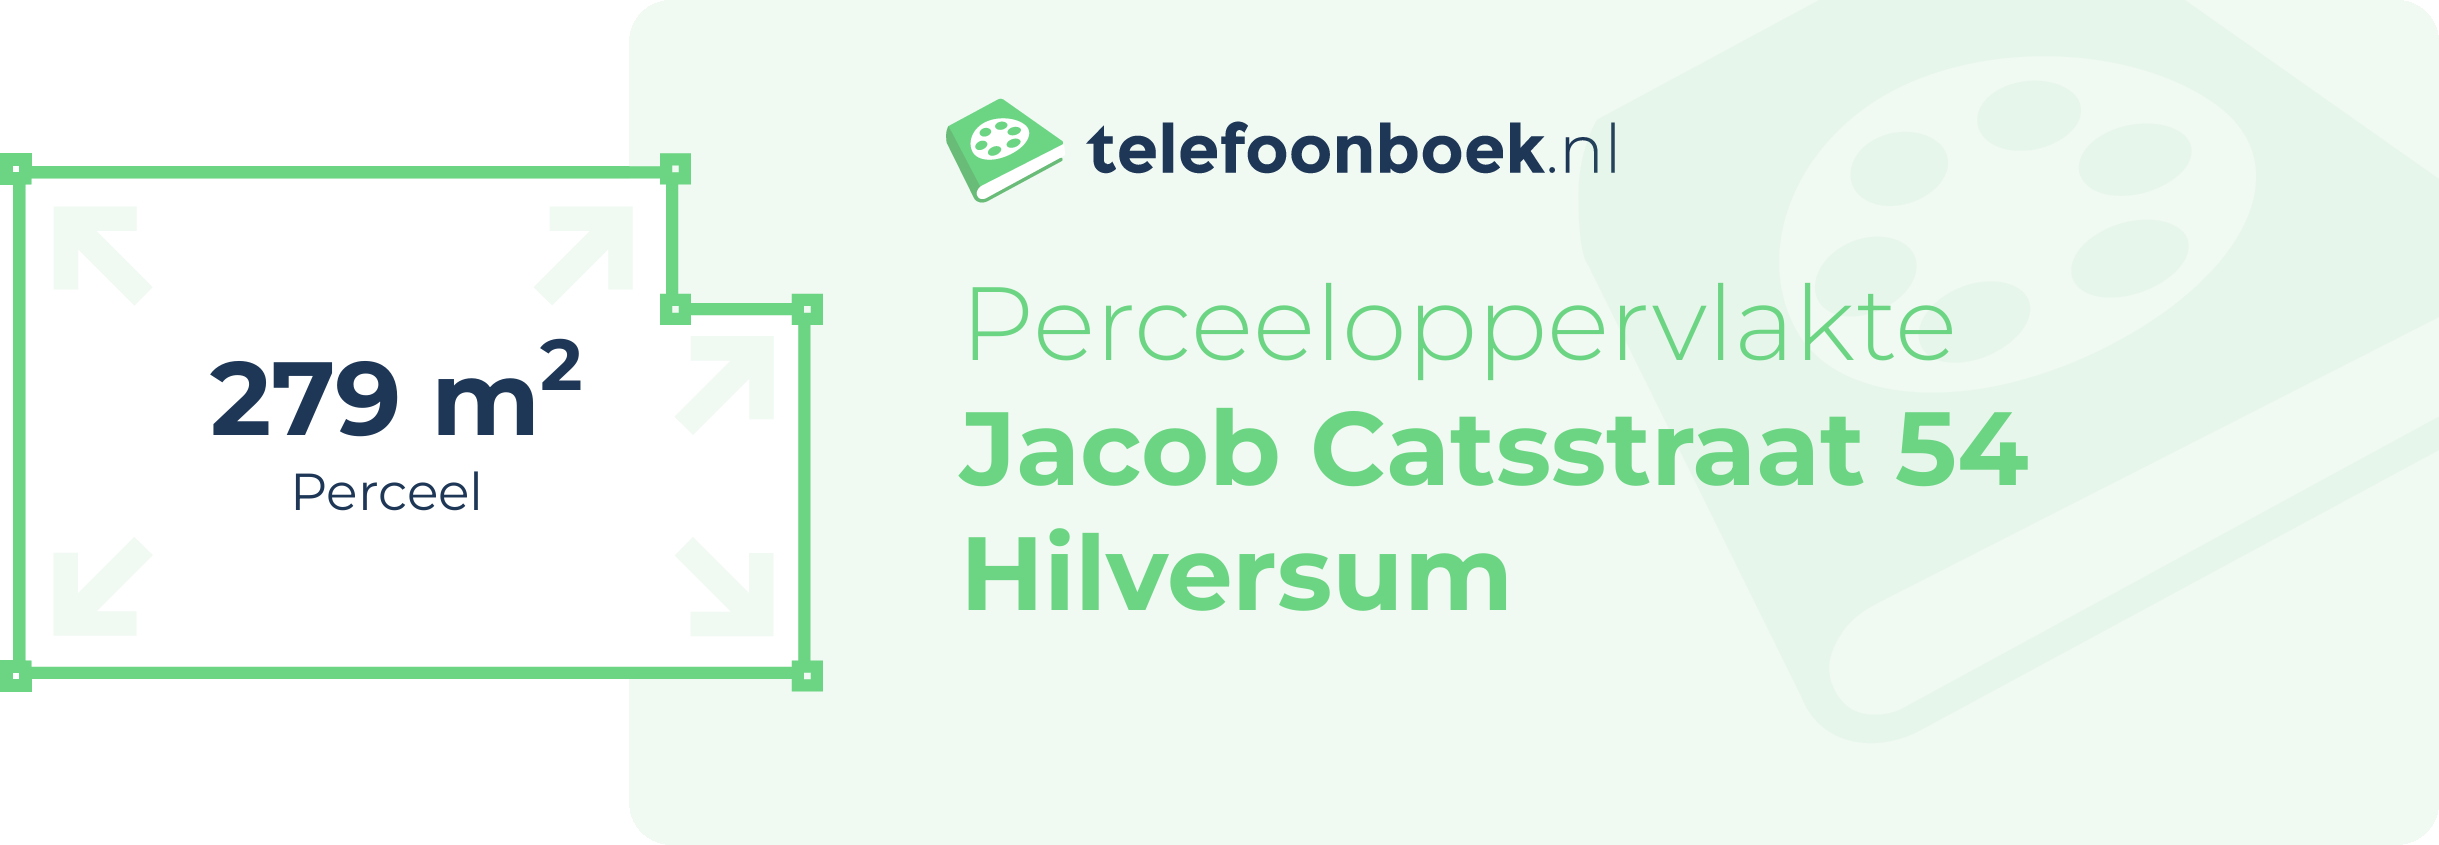 Perceeloppervlakte Jacob Catsstraat 54 Hilversum